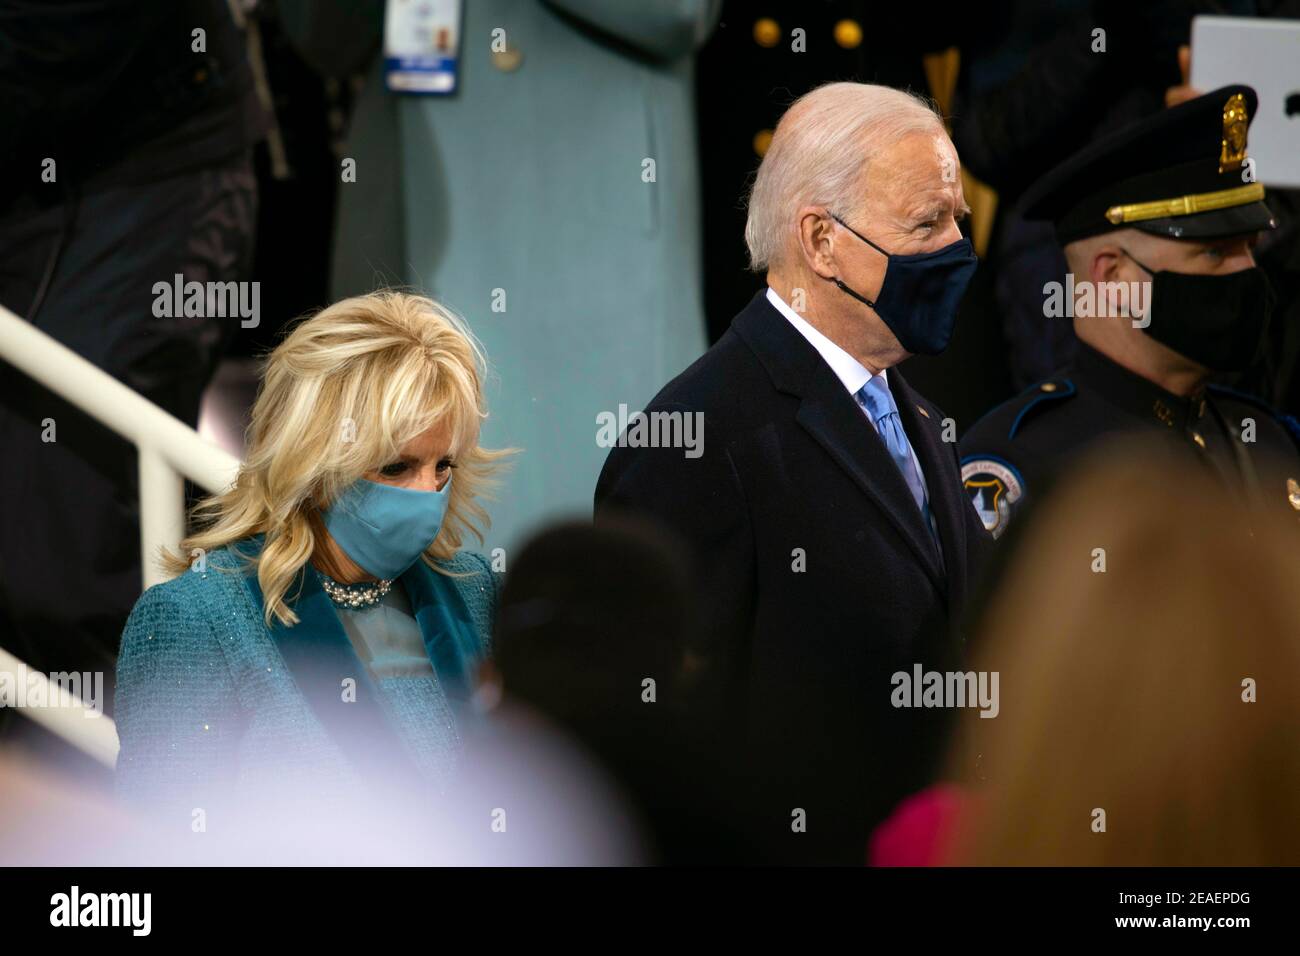 WASHINGTON DC, États-Unis - 20 janvier 2021 - le président américain Joe Biden et son épouse Dr. Jill Biden entrent dans la plateforme d'inauguration pendant le 59ème Président présidentiel Banque D'Images